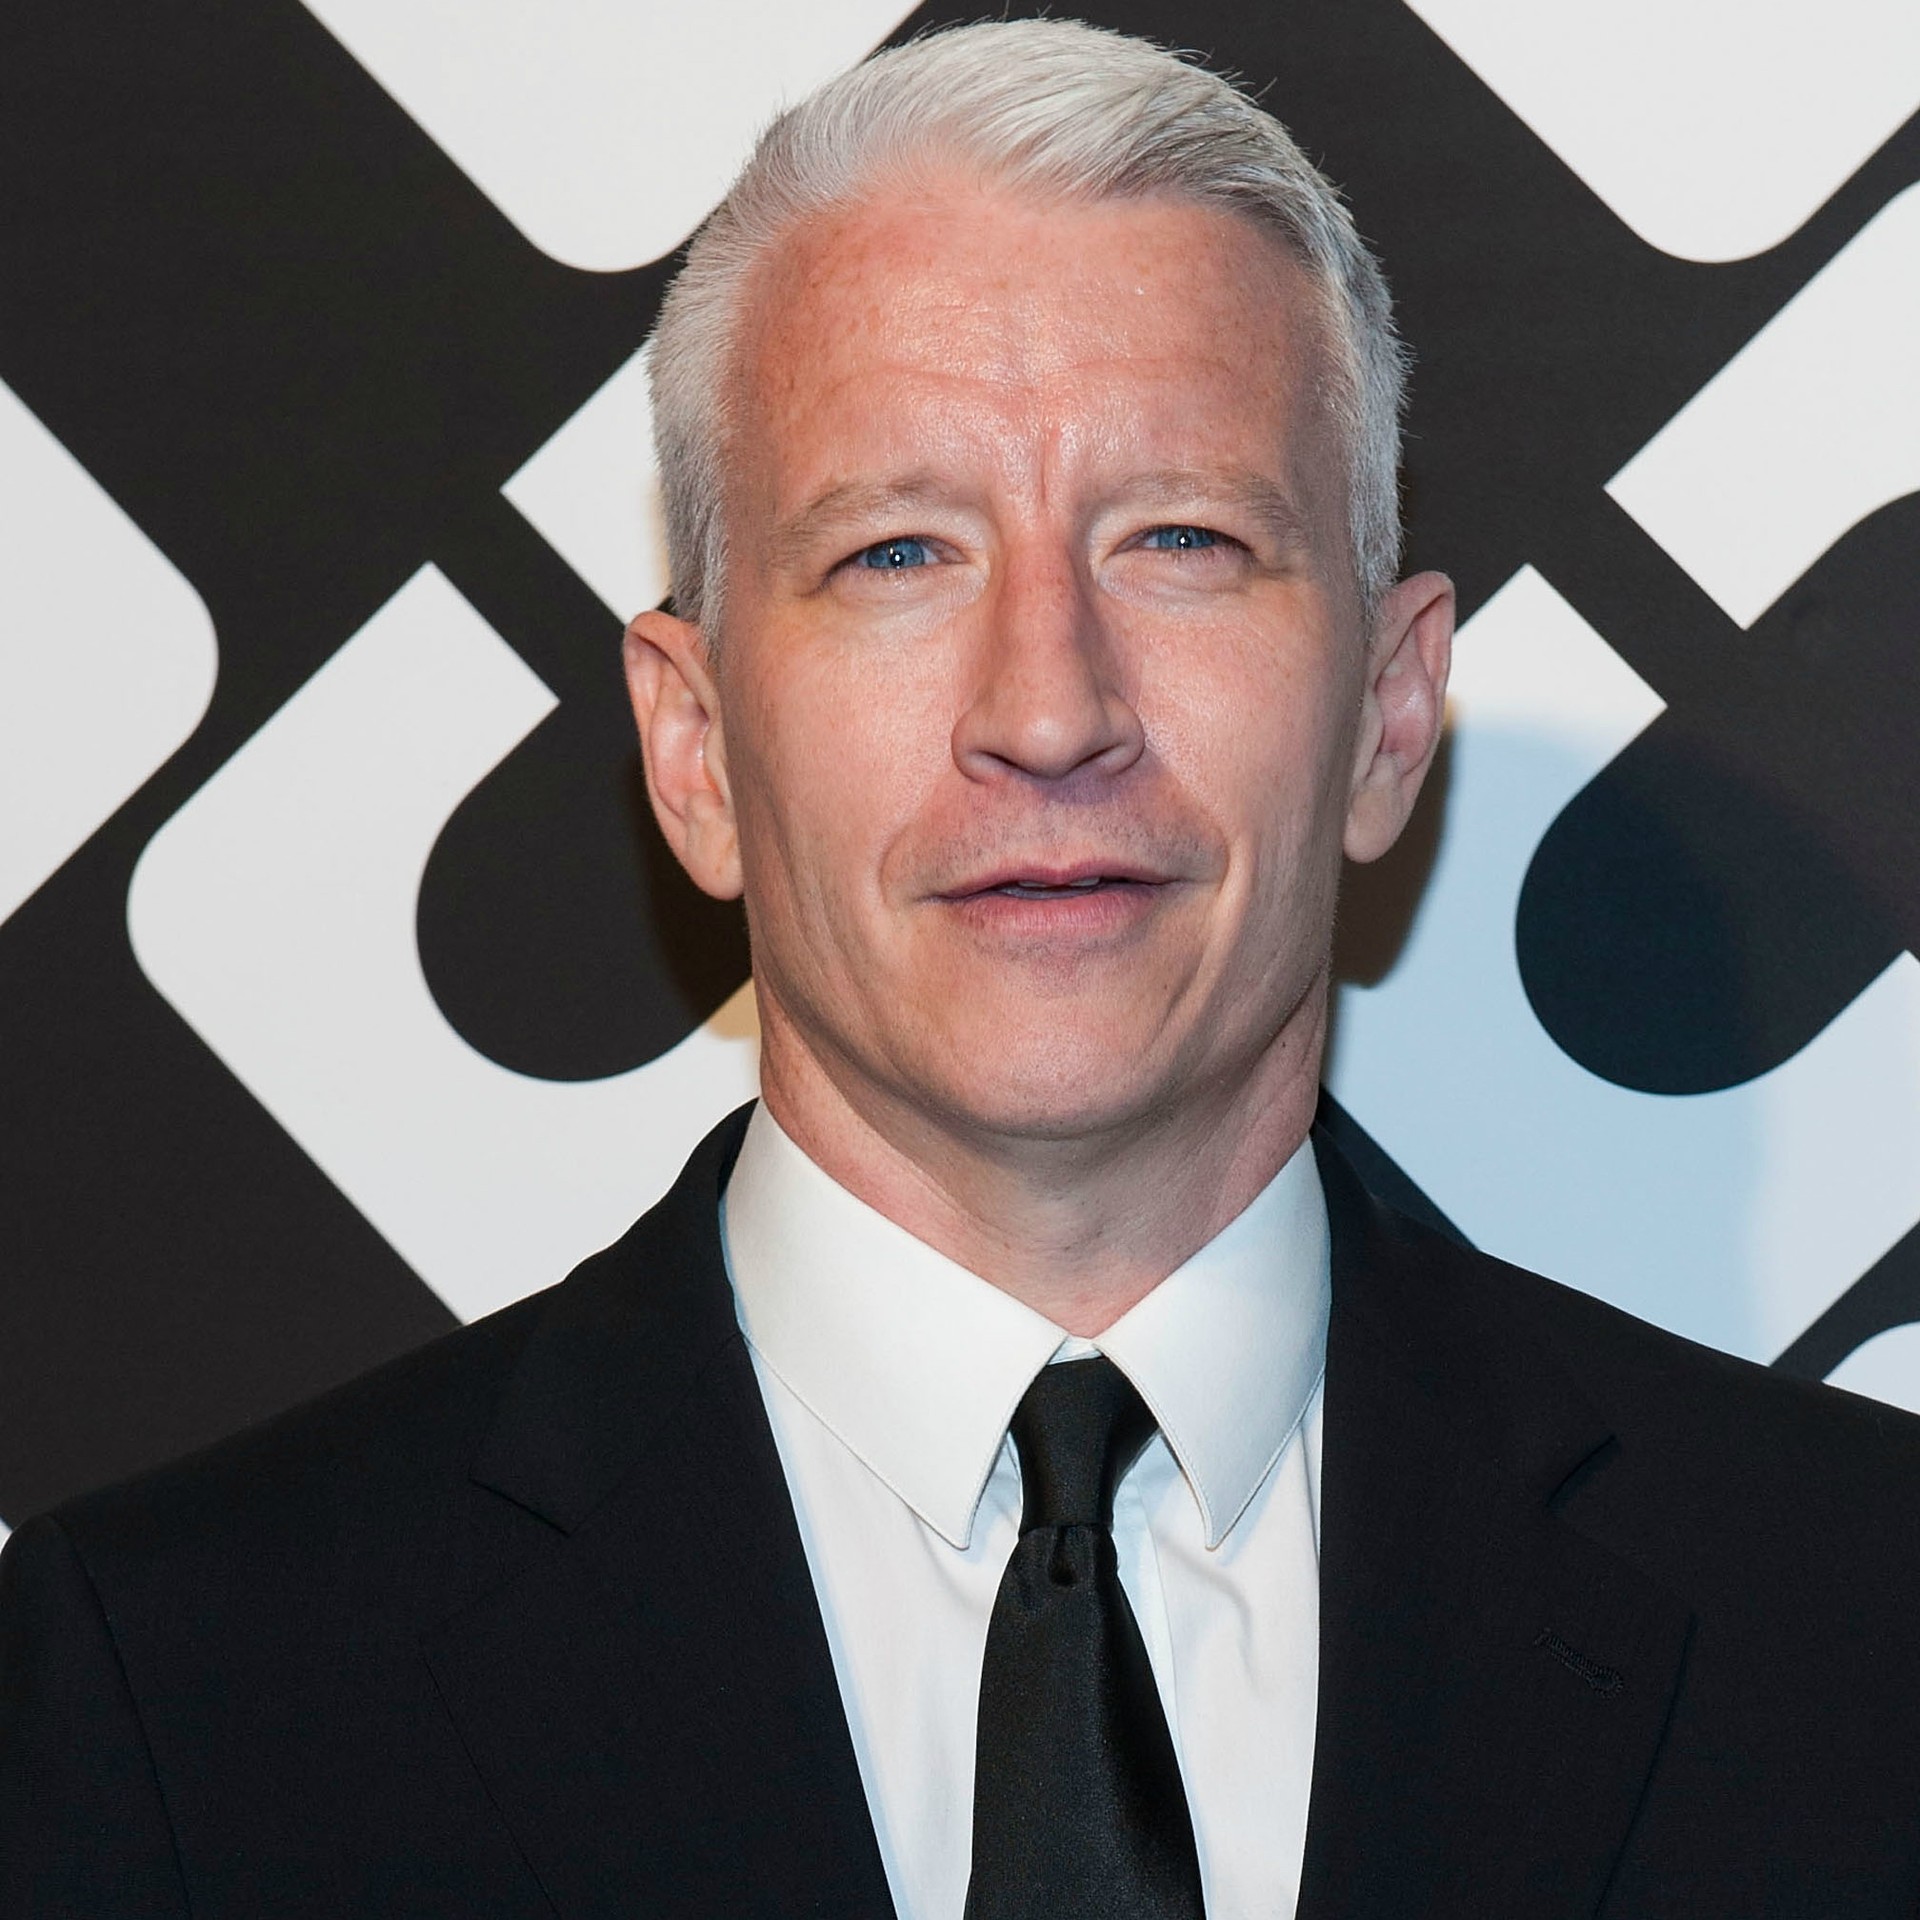 O jornalista Anderson Cooper, de 46 anos, saiu do armário em um e-mail enviado ao site 'The Daily Beast': 